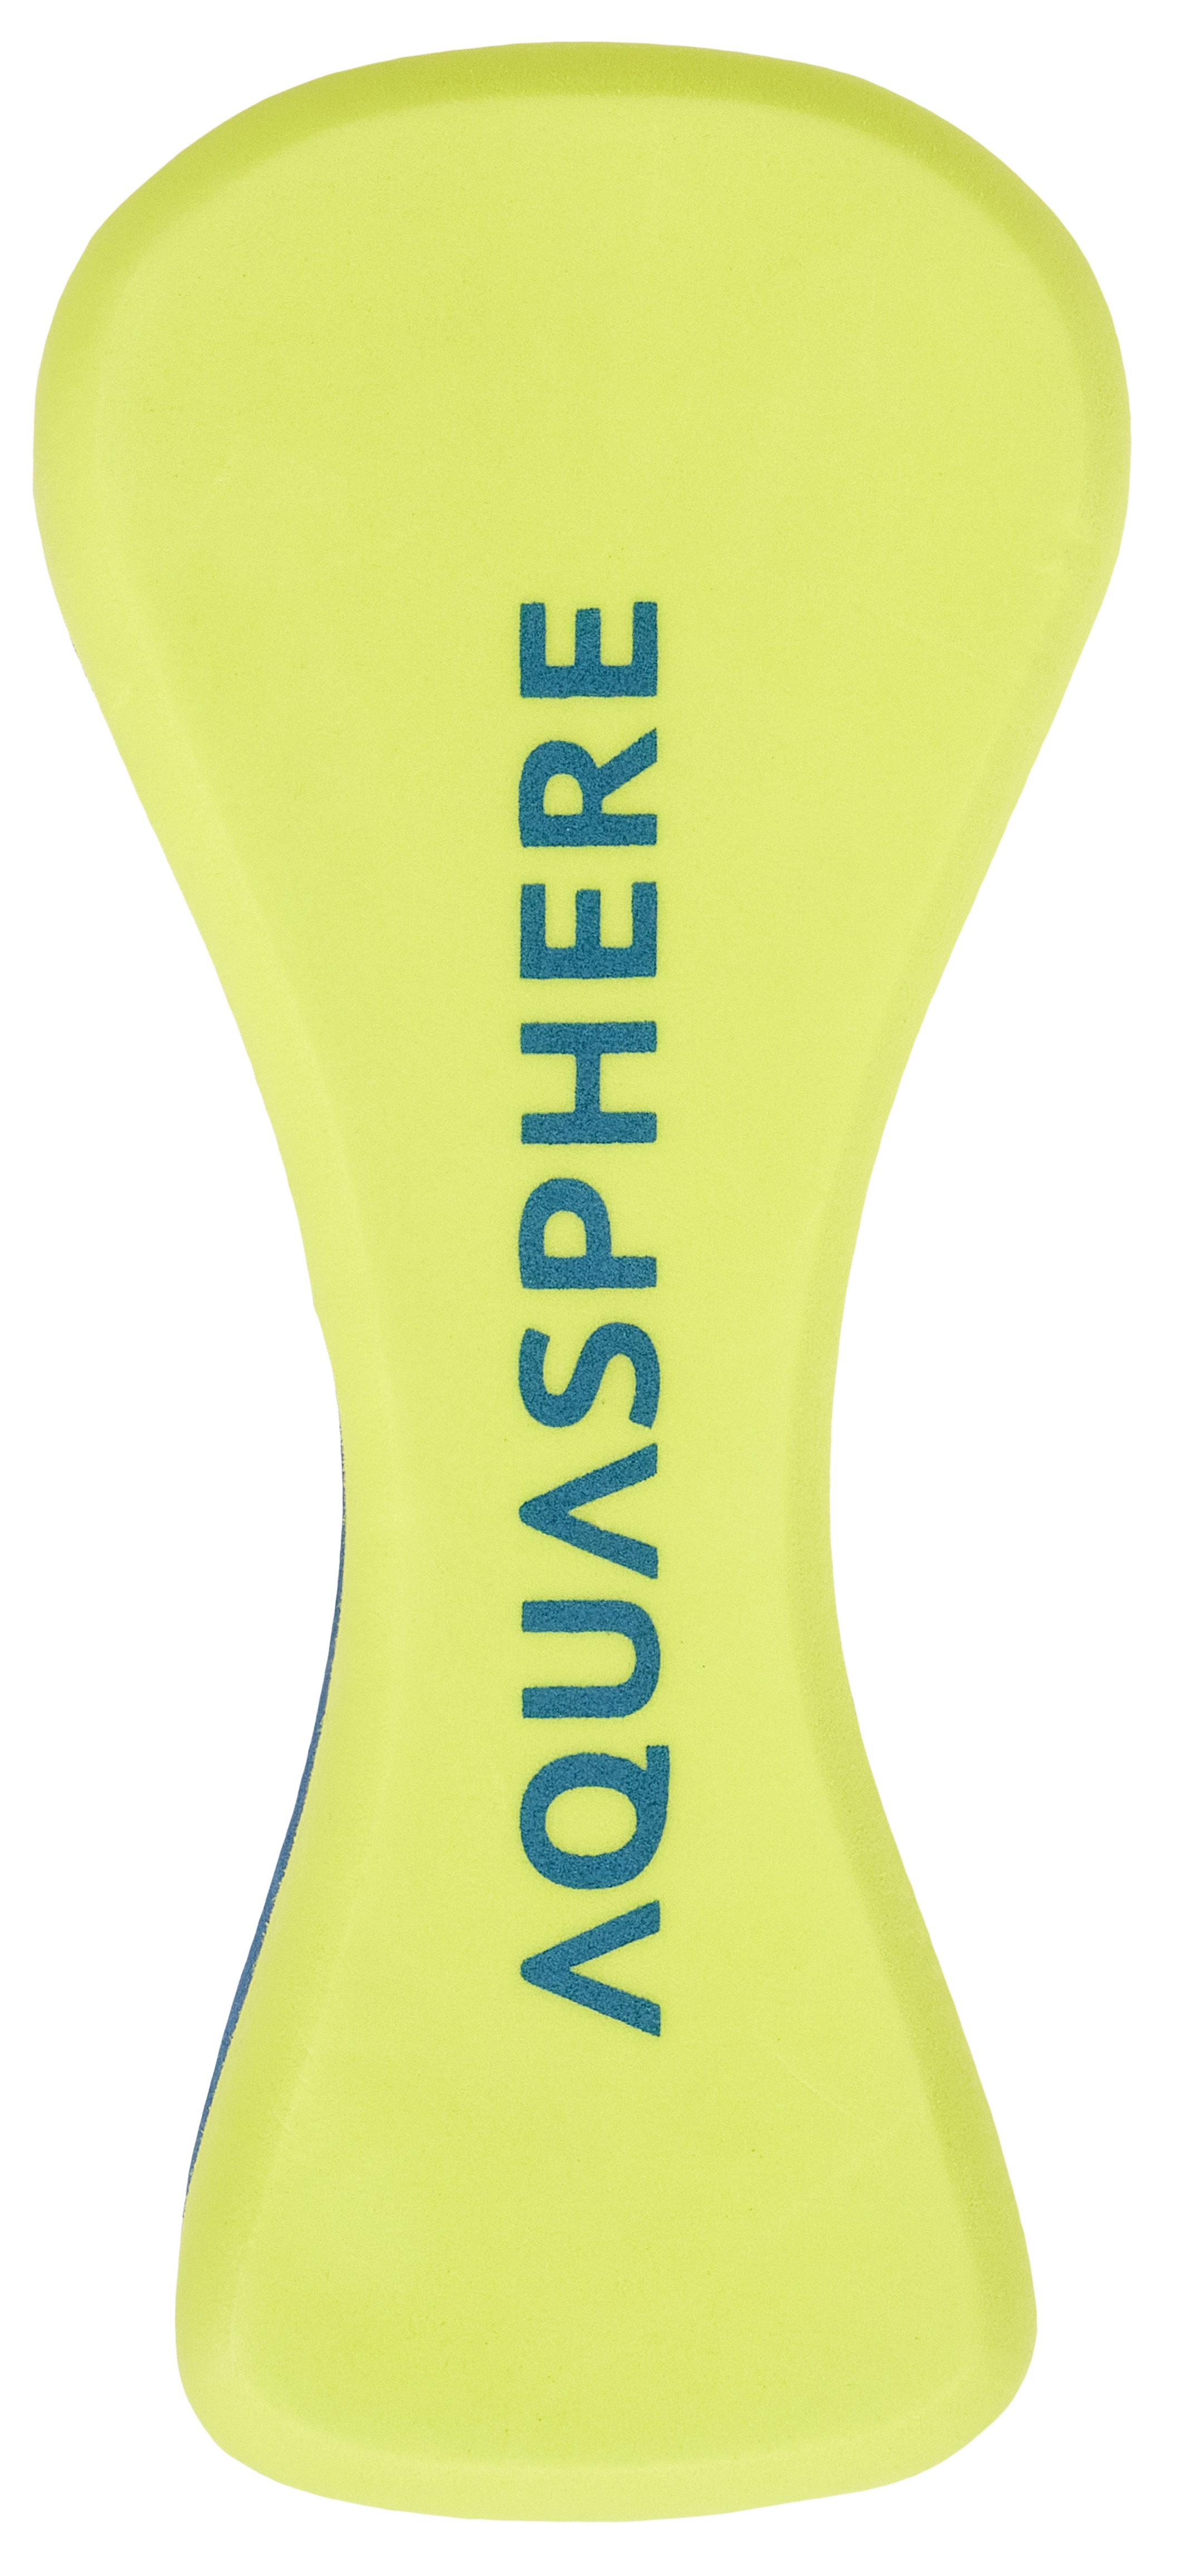 Aqua Sphere PULL BUOY Trainingshilfe Schwimmtrainingshilfe für Schwimmen